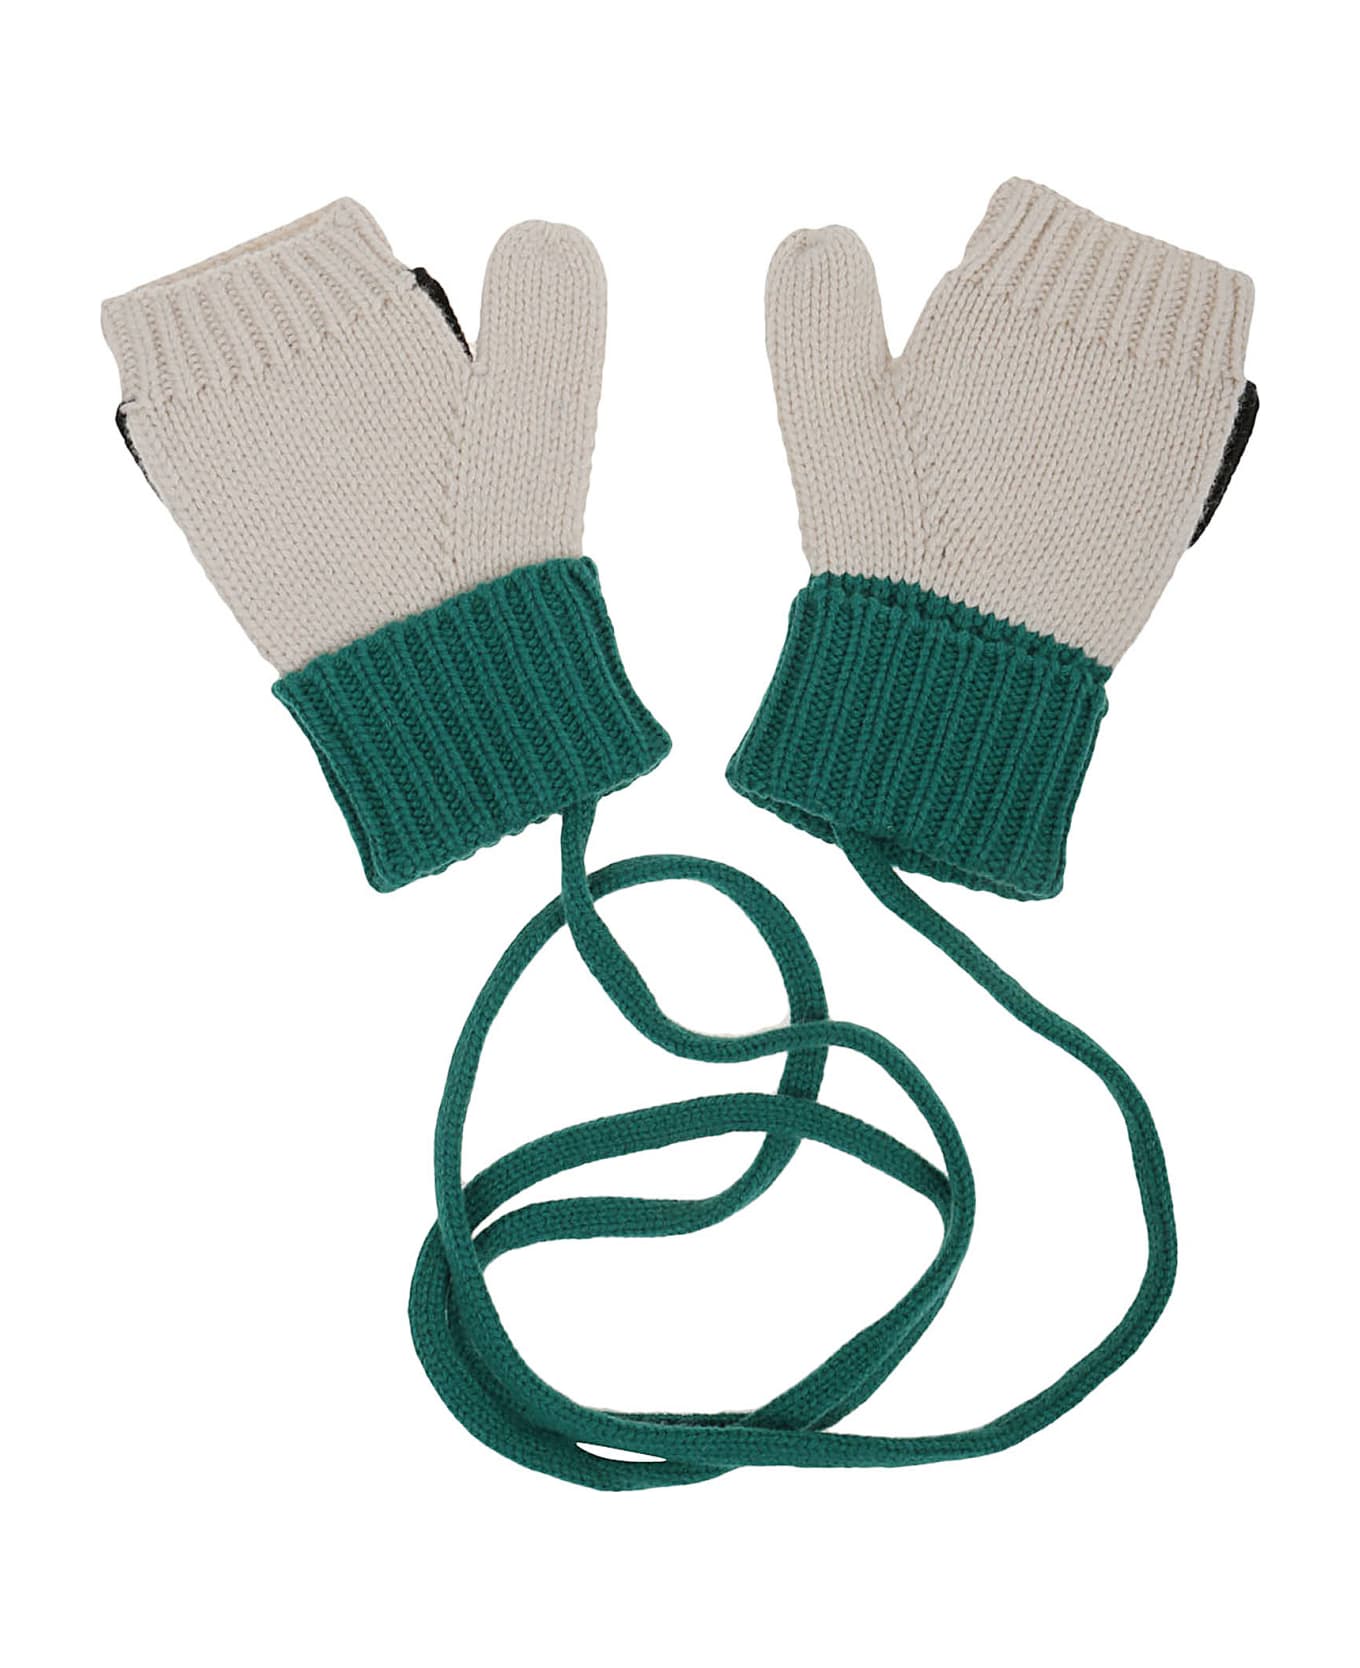 Kenzo Gloves - Grass Green